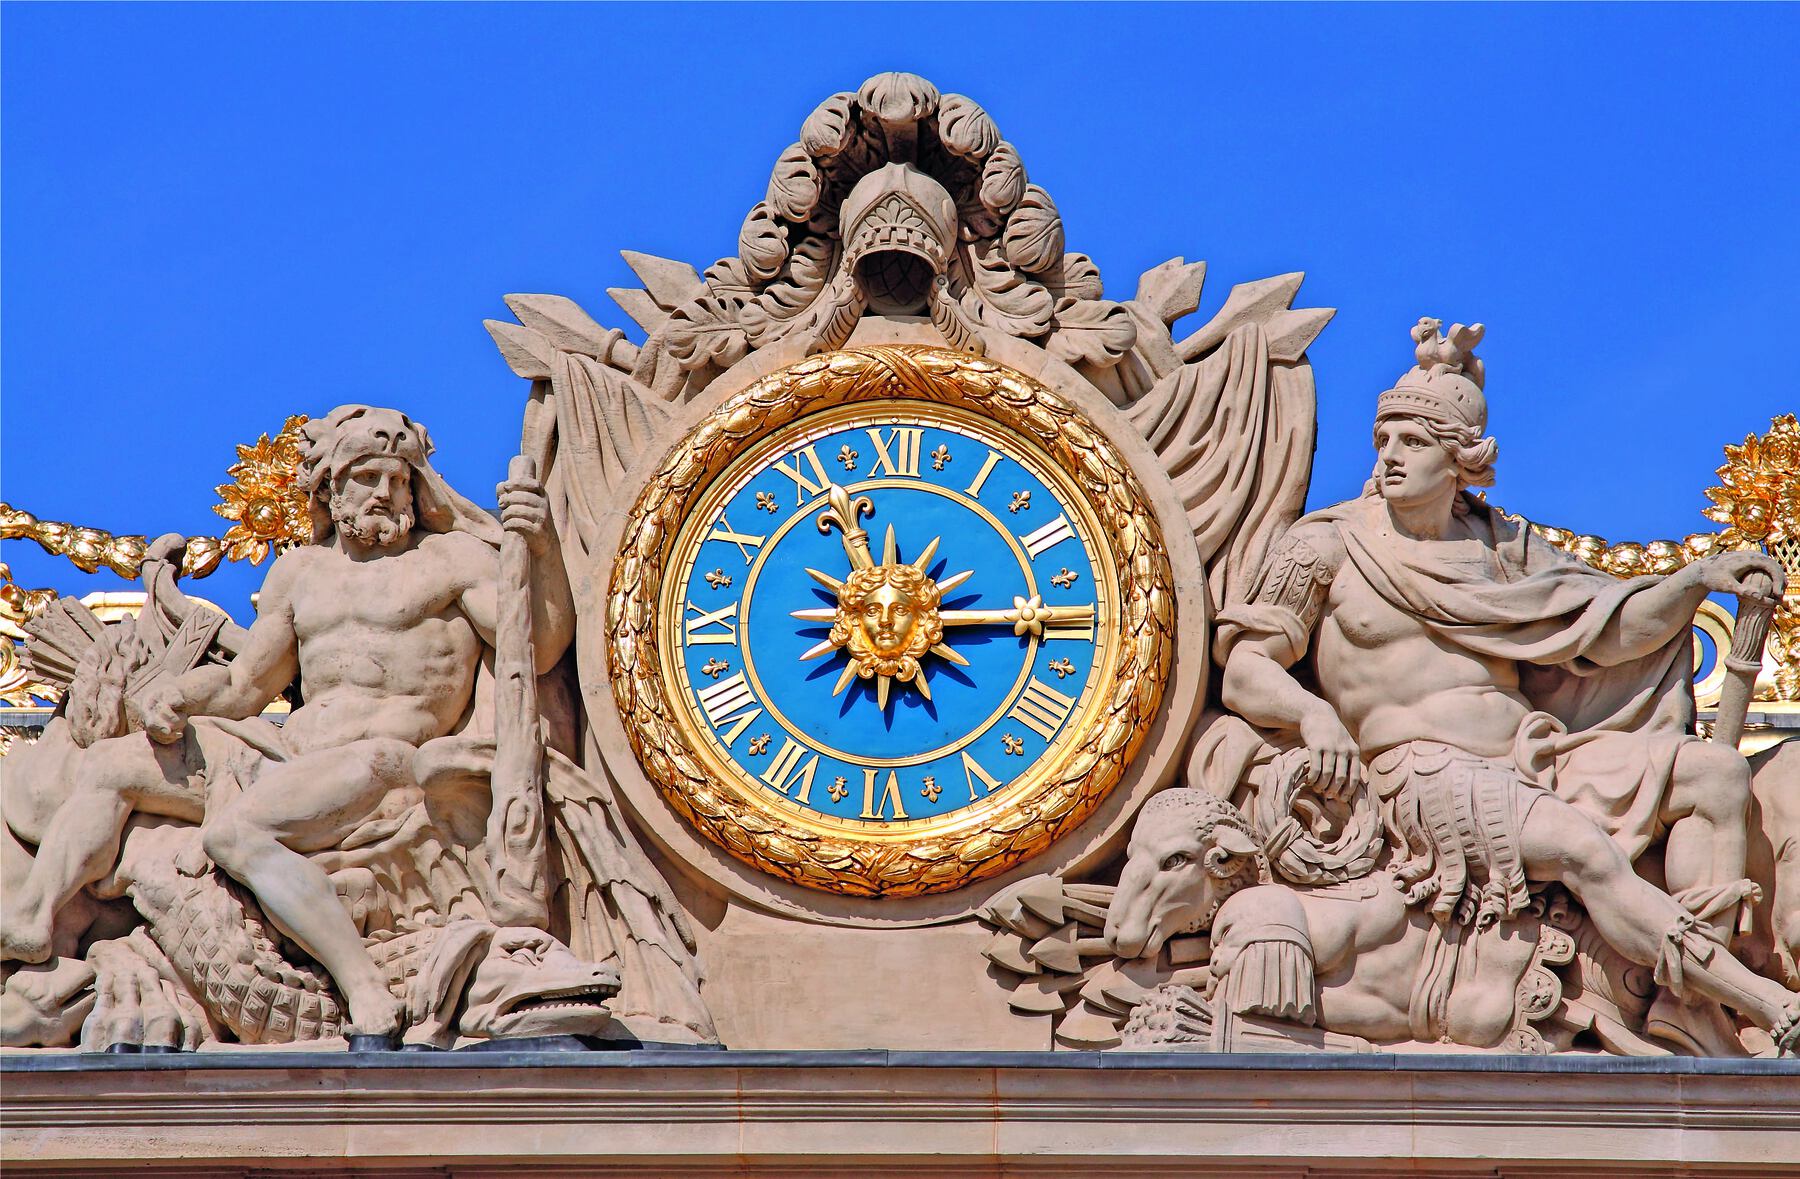 Fotografia. Um relógio de ponteiros dourado com fundo azul. No centro dele há um sol e, nas laterais, há esculturas de pessoas feitas em pedra.